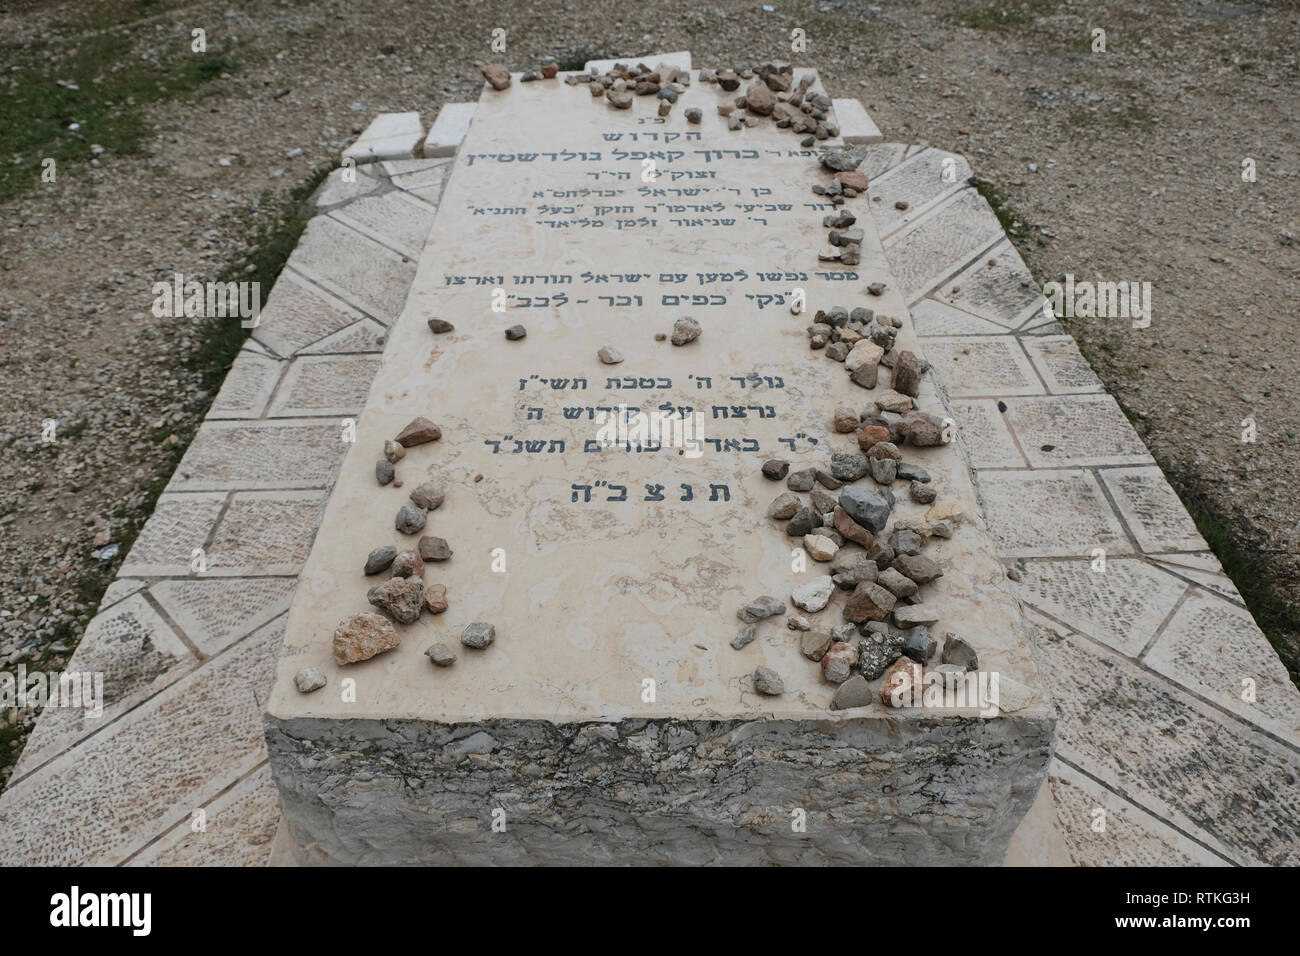 Pietra tombale di Baruch Goldstein, che era un medico American-Israeli, religioso estremista, che ha perpetrato il 1994 Grotta dei patriarchi il massacro di Hebron, uccidendo 29 musulmana palestinese adoratori. Egli è stato picchiato a morte dai superstiti del massacro. Situato nel parco Kahane chiamato dopo il rabbino Meir Kahane, che ha guidato la estrema destra partito Kach. Insediamento israeliano di Kiryat Arba o Qiryat Arba nei pressi di Hebron Cisgiordania Foto Stock